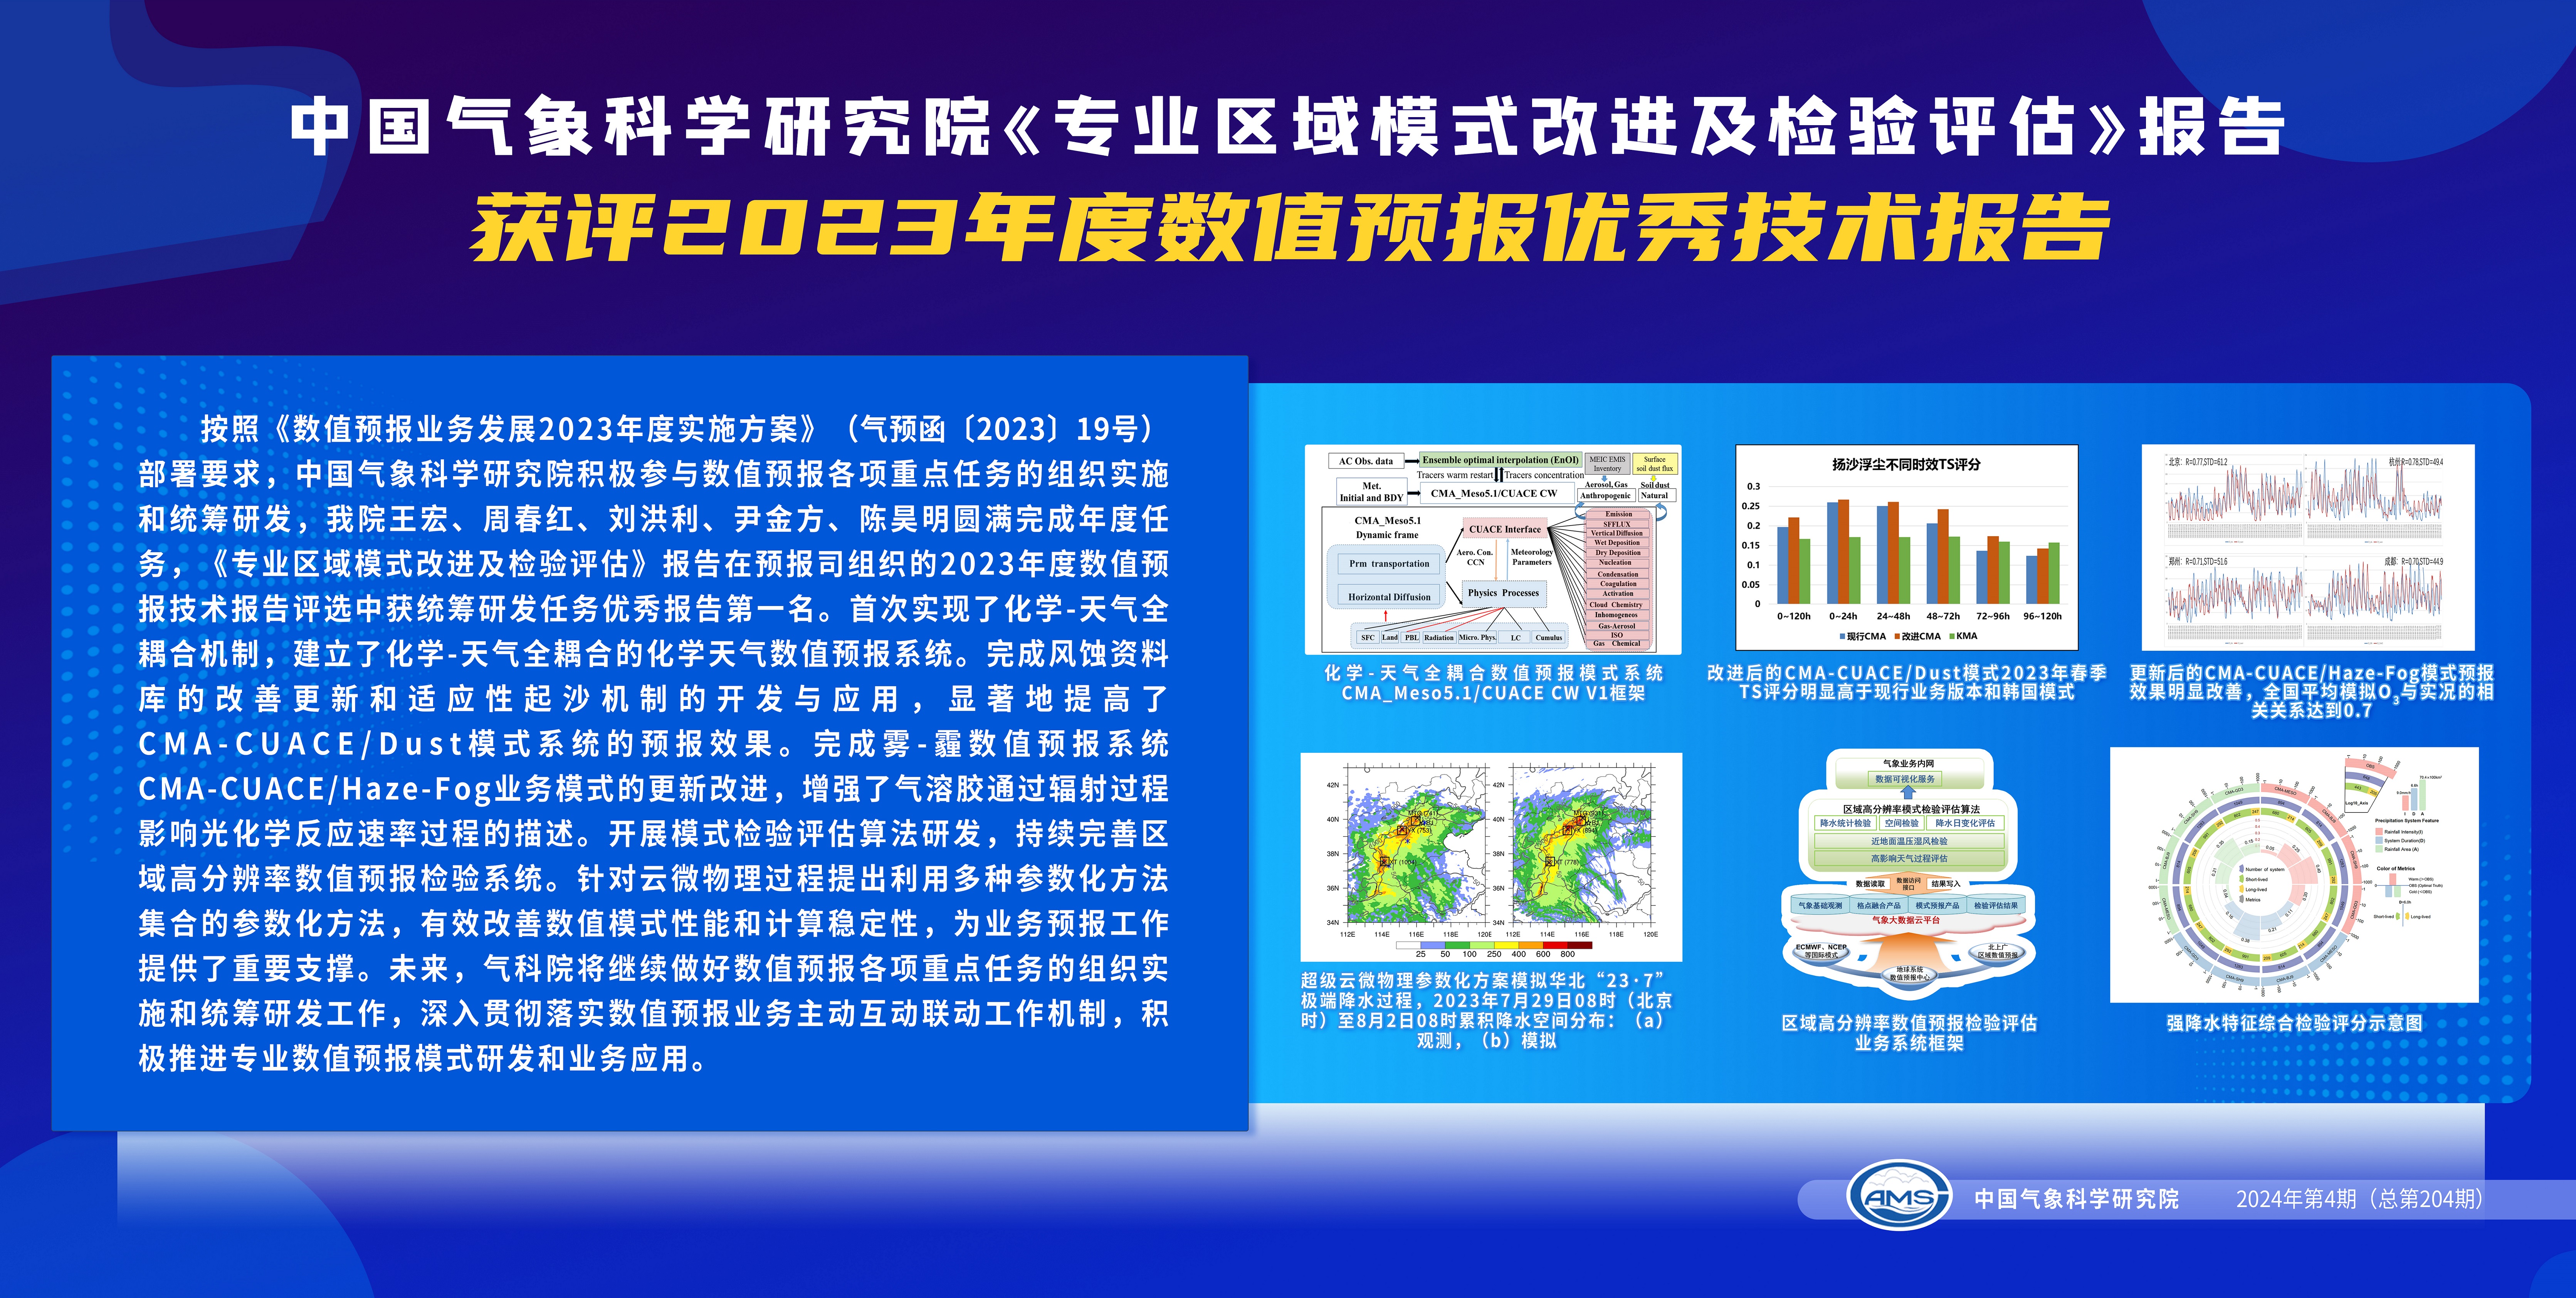 中国气象科学研究院《专业区域模式改进及检验评估》报告获评2023年度数值预报优秀技术报告